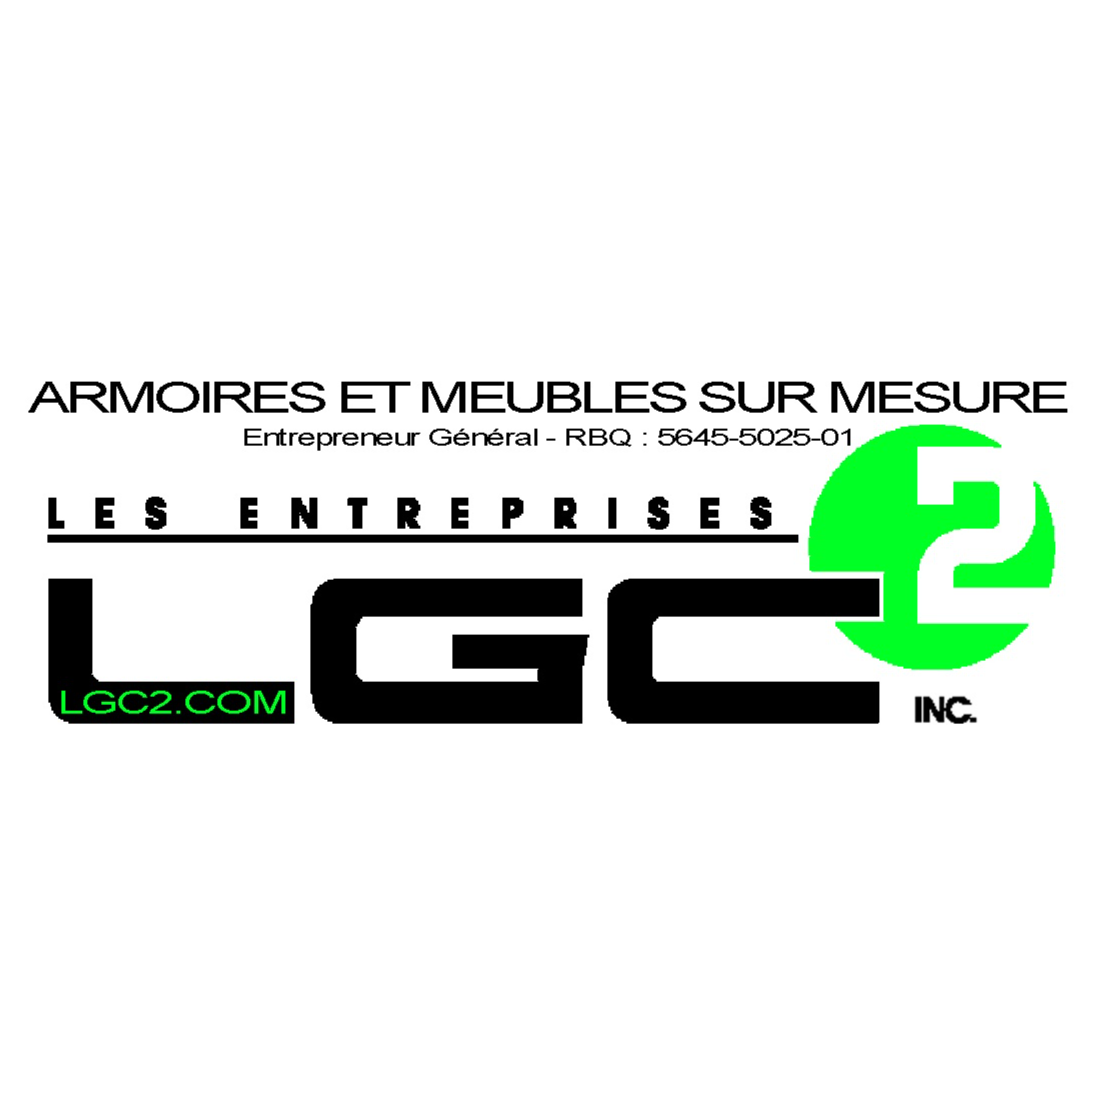 Les Entreprises LGC2 Inc. - Armoires et Meubles sur Mesure